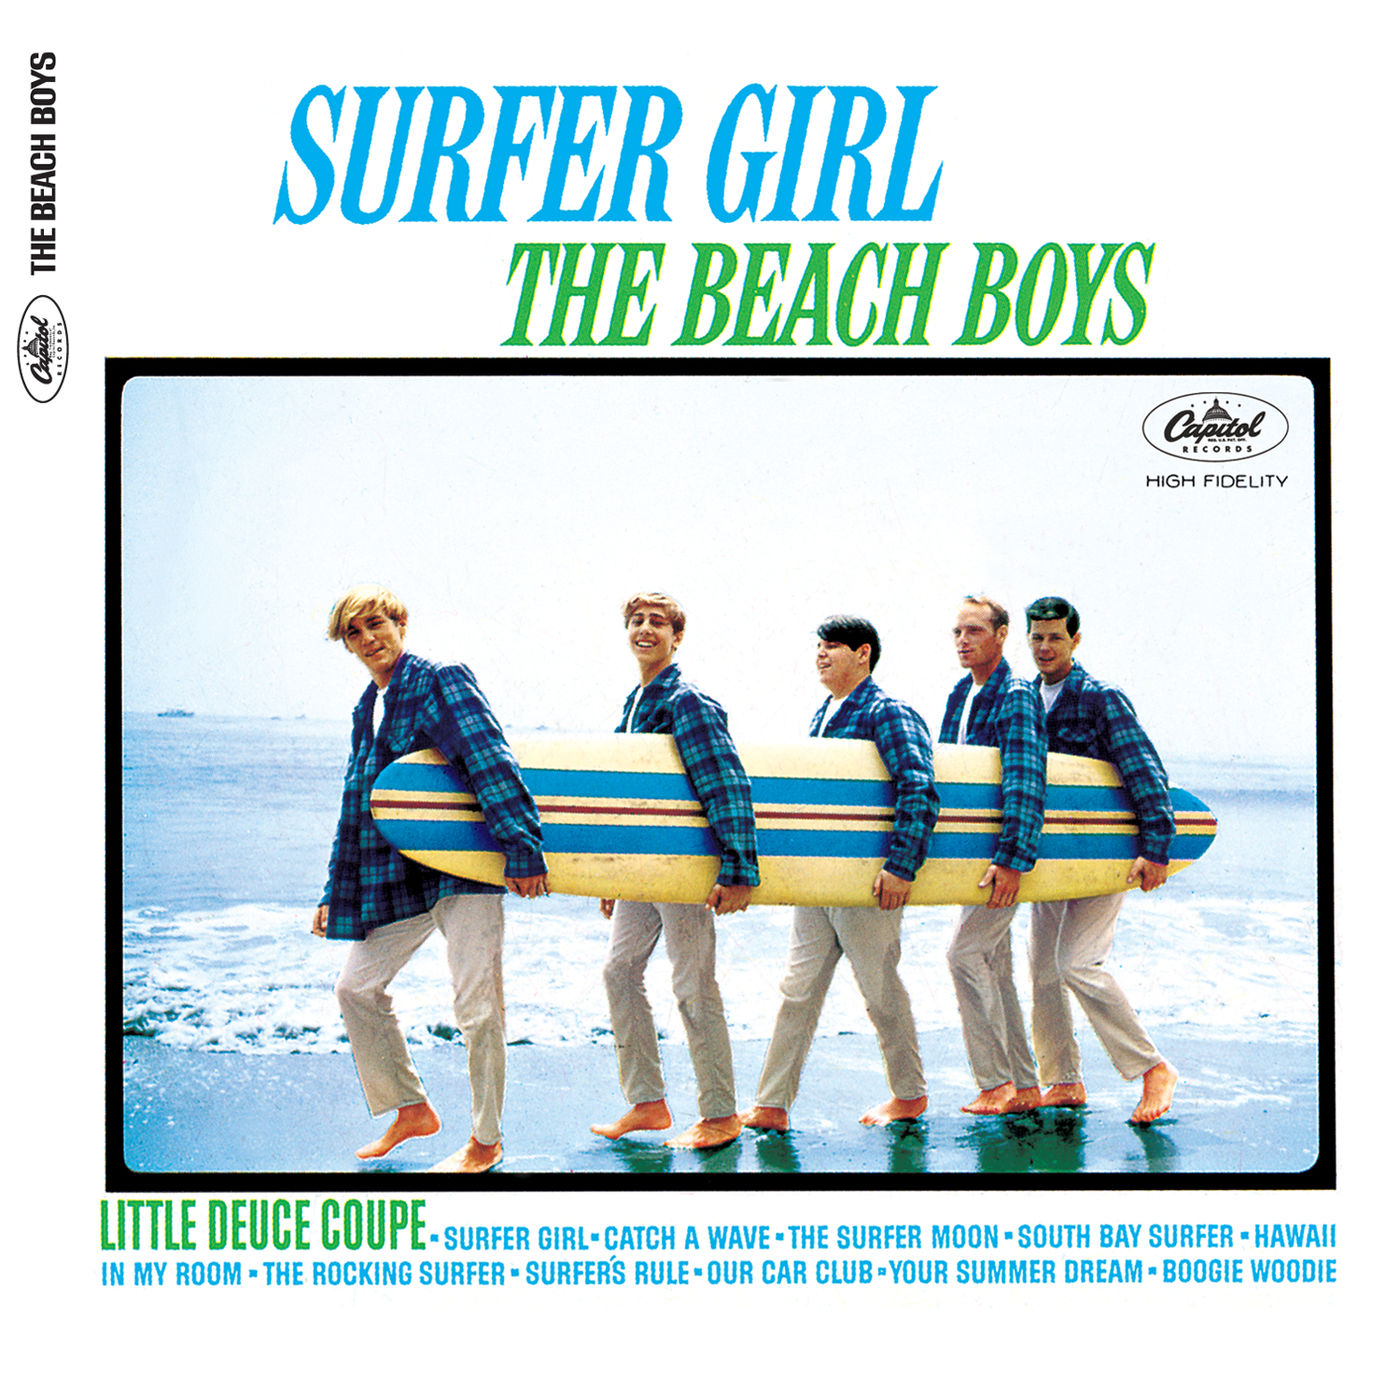 The Beach Boys – Surfer Girl (Mono ＆ Stereo Version) (Mono ＆ Stereo)【192kHz／24bit】意大利区-OppsUpro音乐帝国